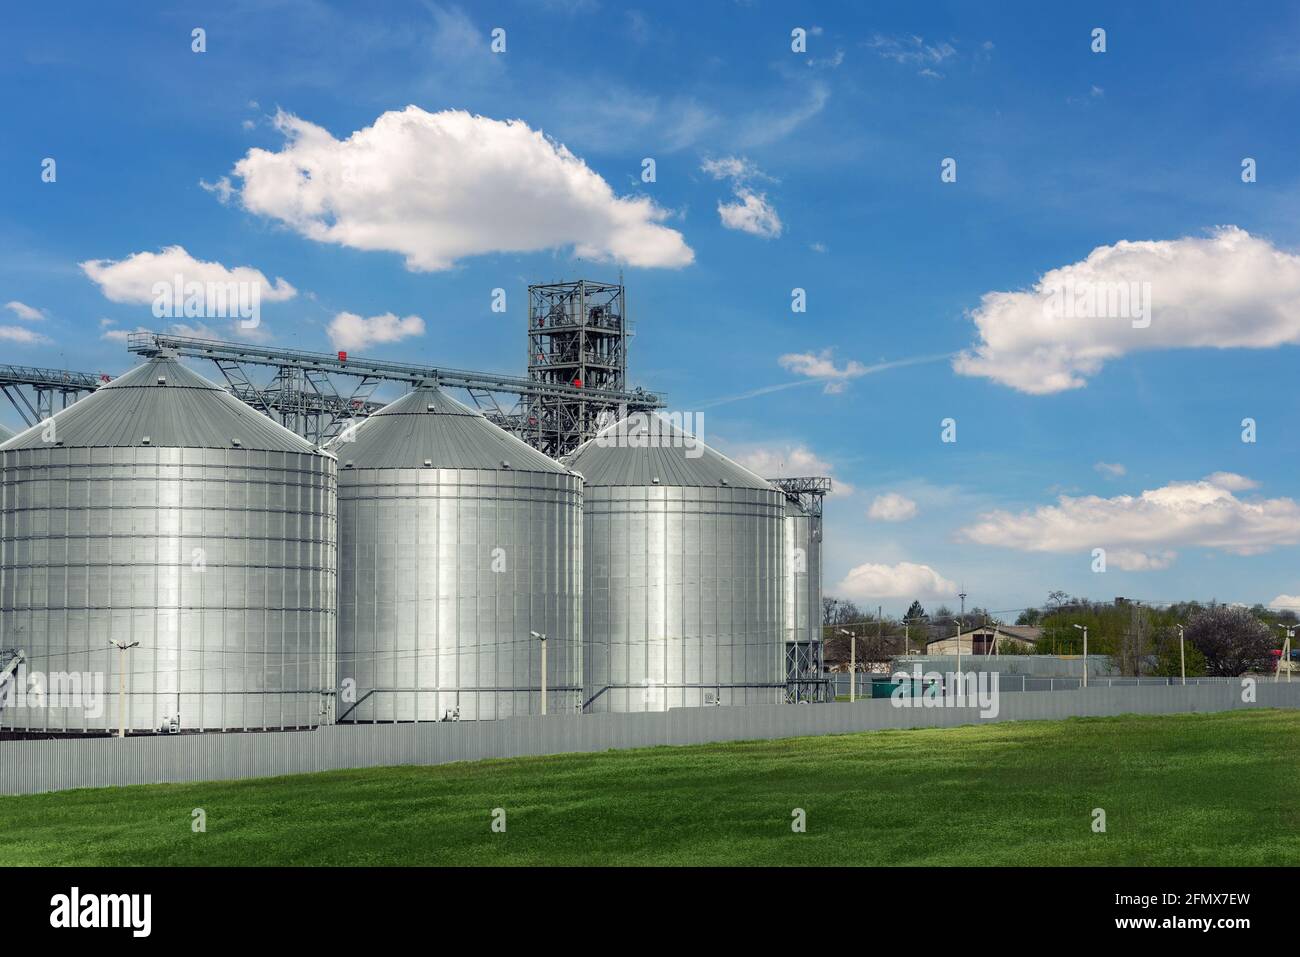 Szenischer Blick auf große, moderne Getreidespeicher-Getreidespeicher aus  Stahl vor blauem Himmel. Agrarindustrie Ackerland ländliche Industrie  Stockfotografie - Alamy